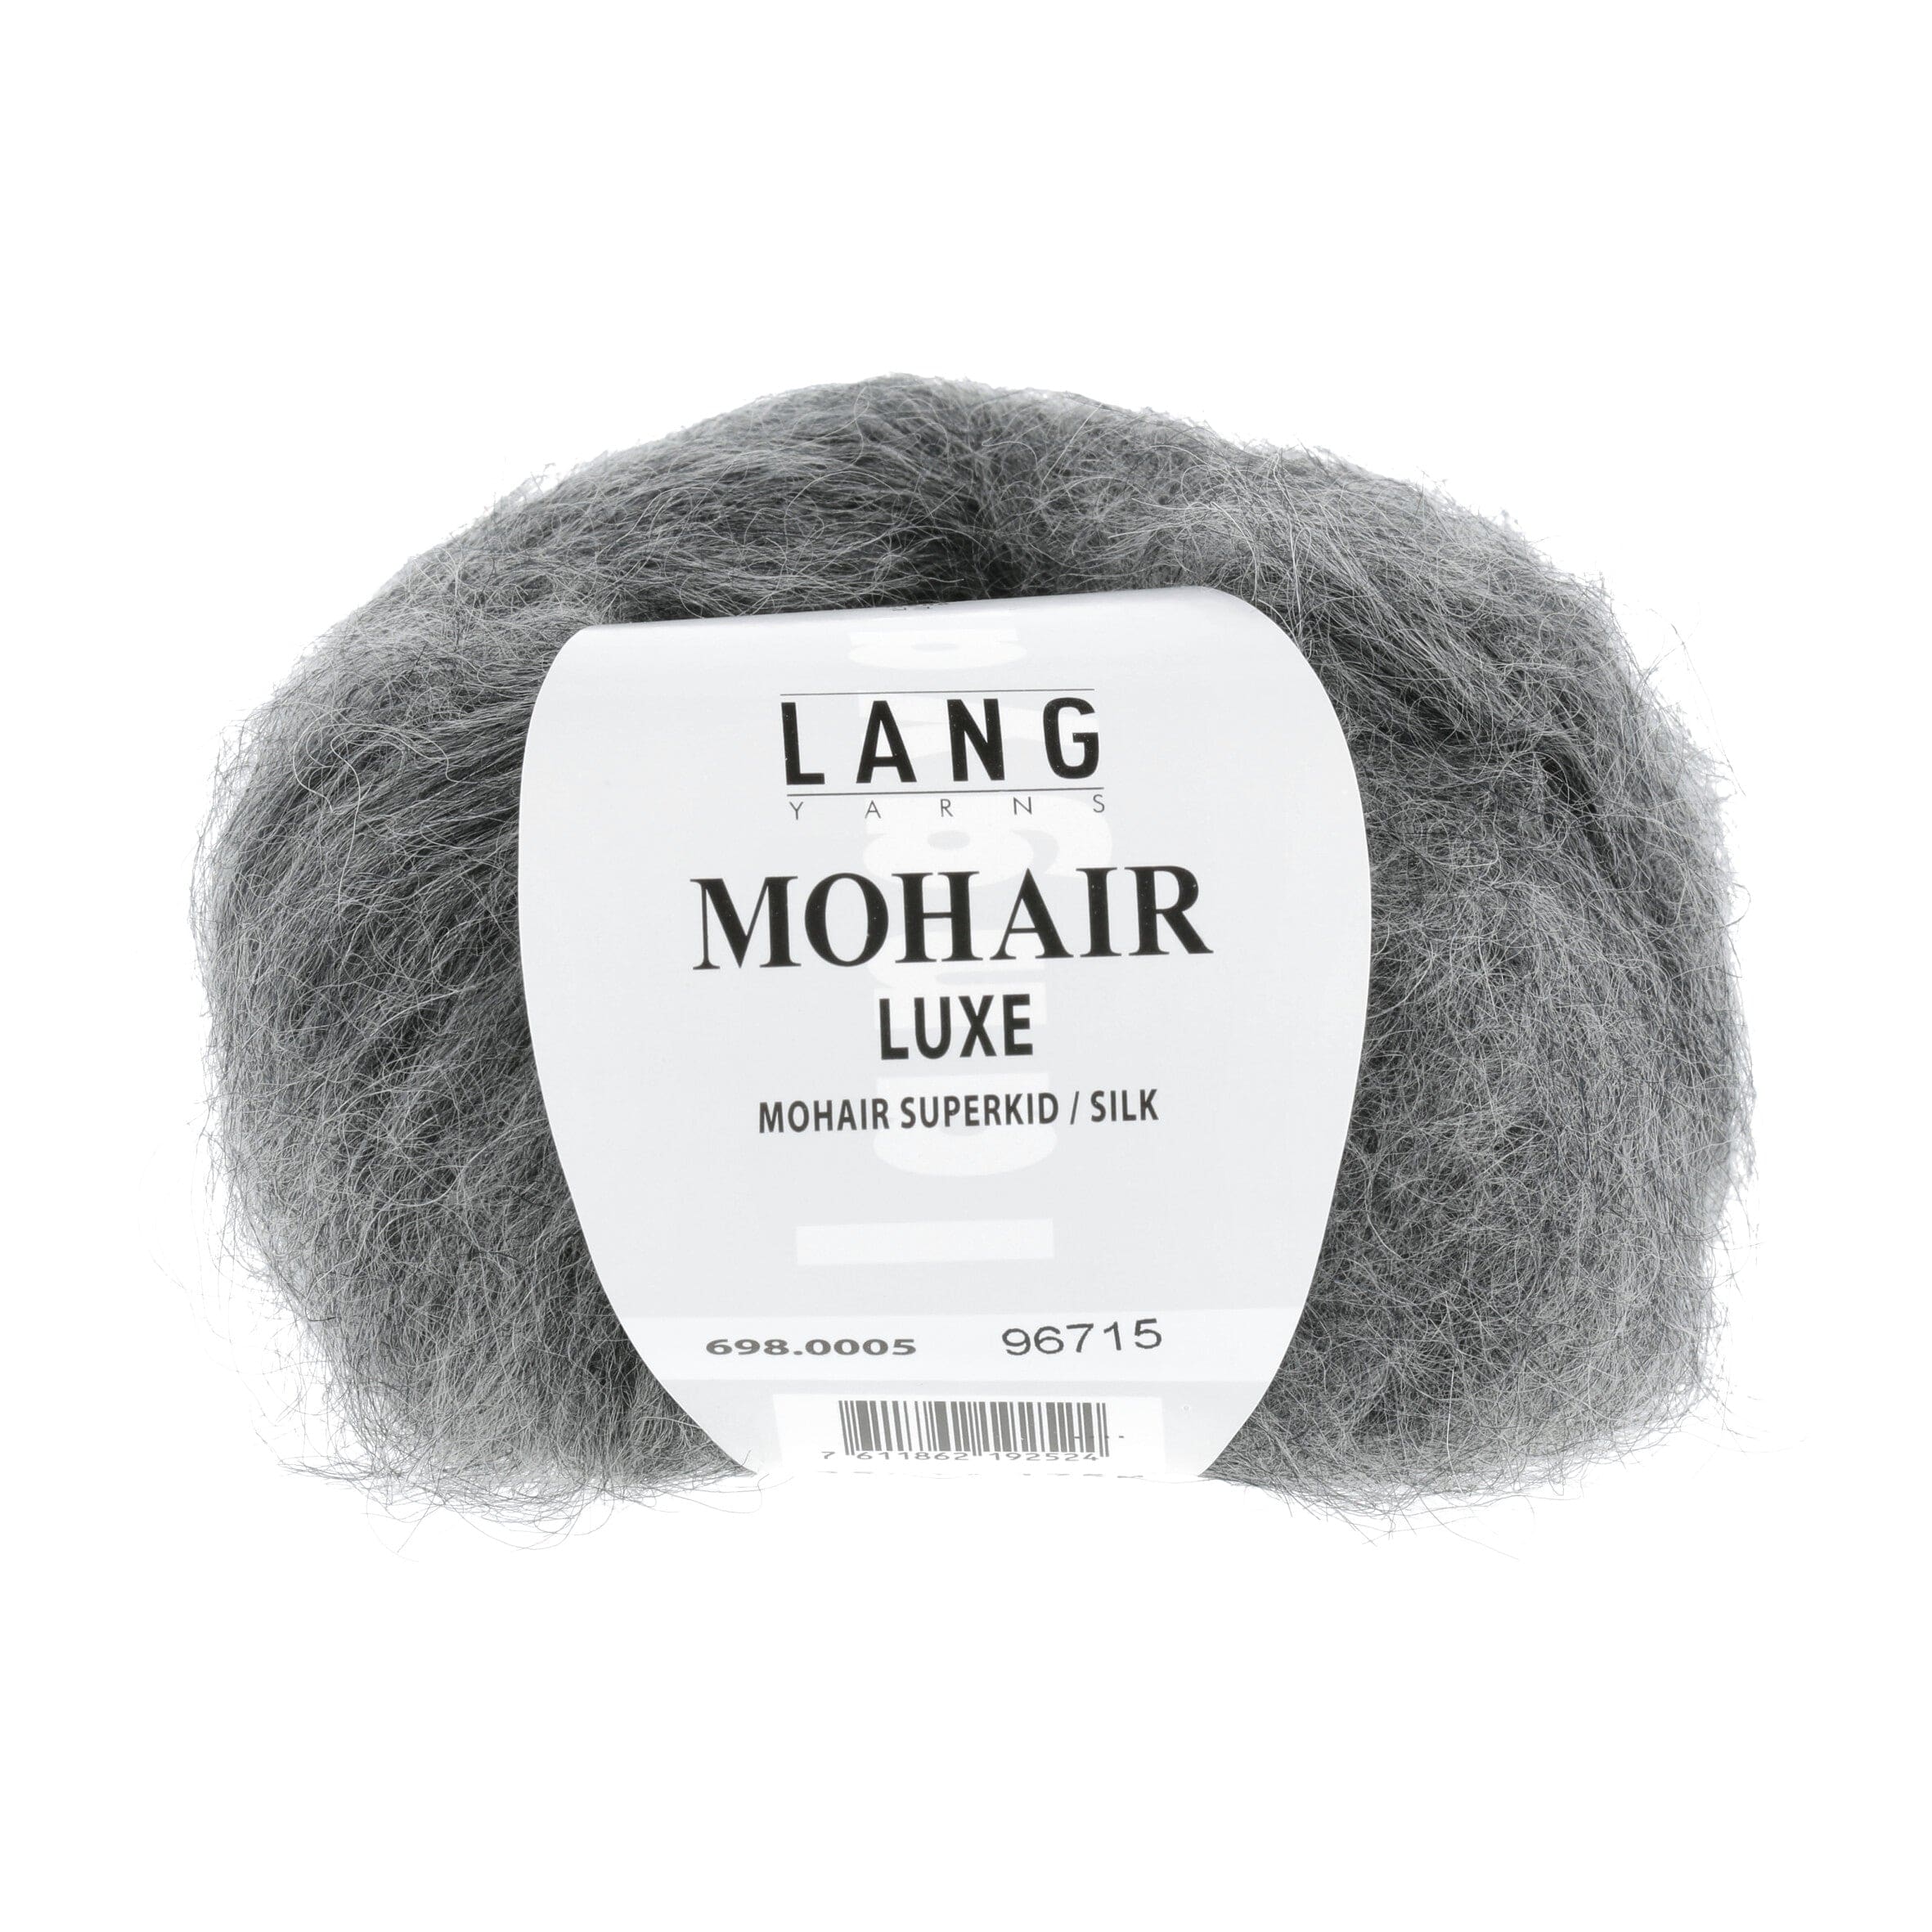 MOHAIR LUXE von LANG YARNS jetzt online kaufen bei OONIQUE